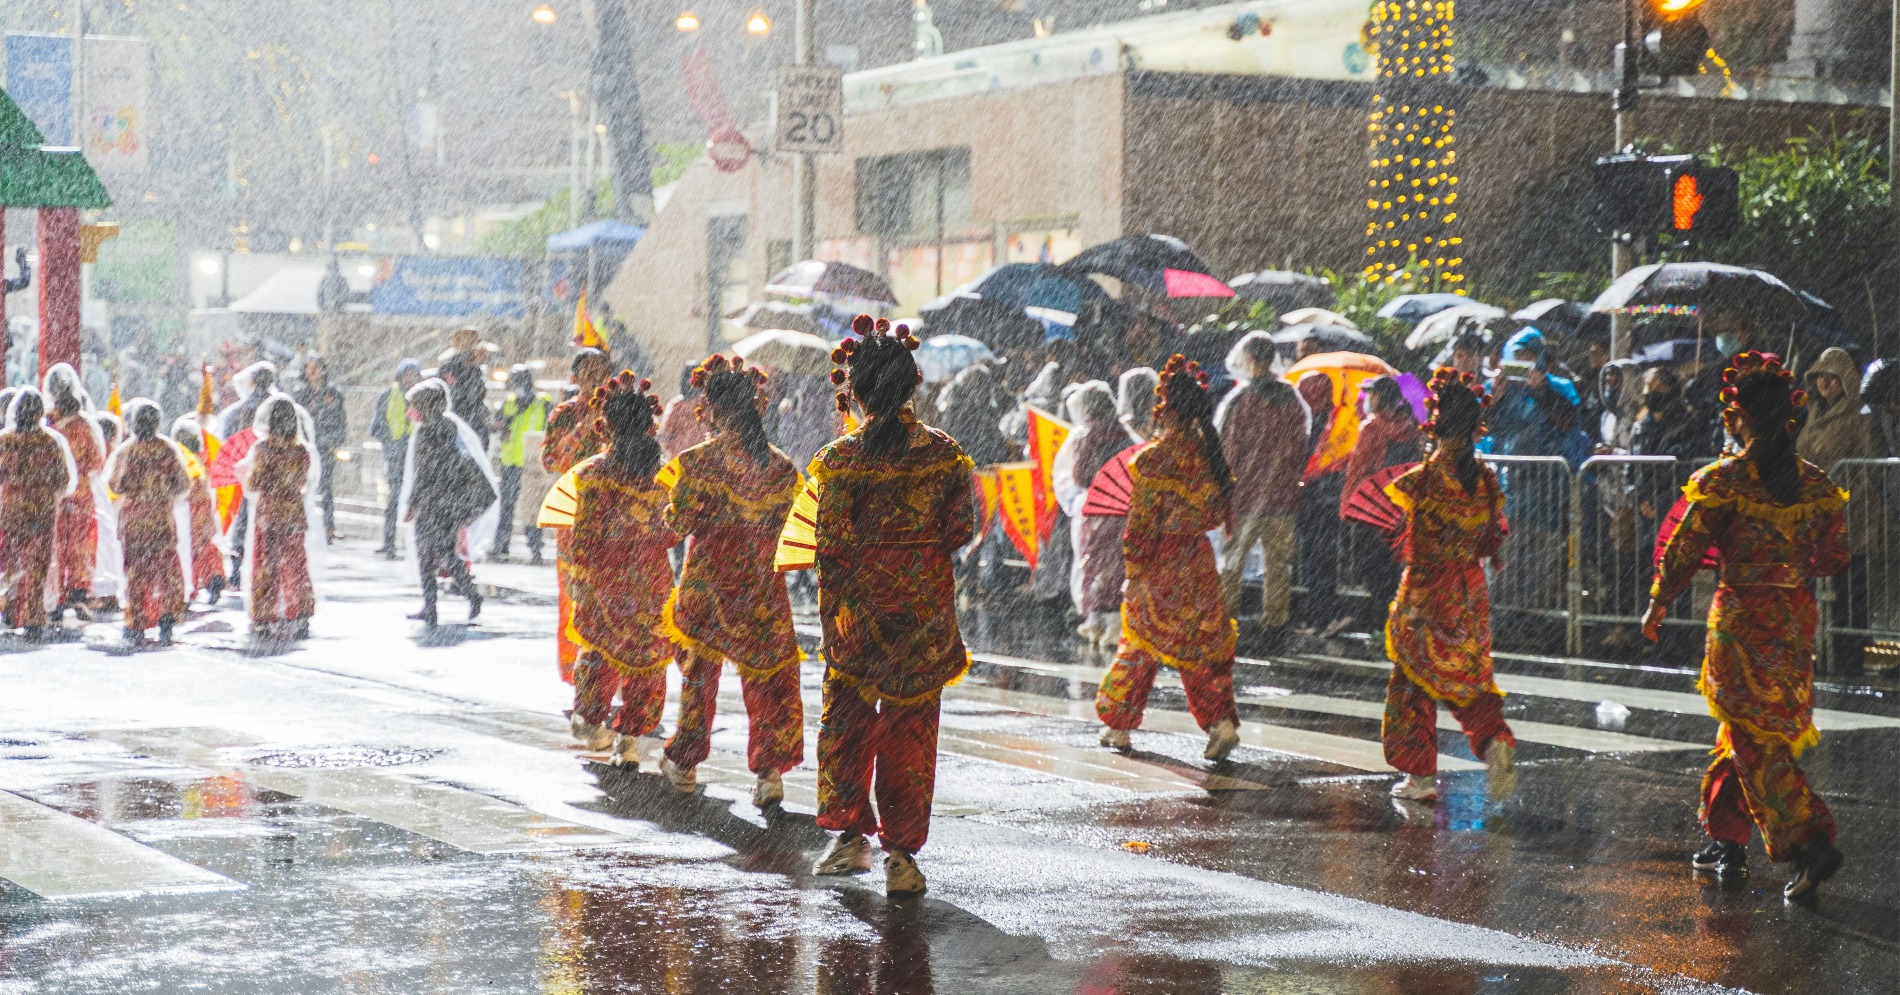 Ilustrasi hujan saat perayaan Imlek (Sumber gambar: Unsplash/Y S)